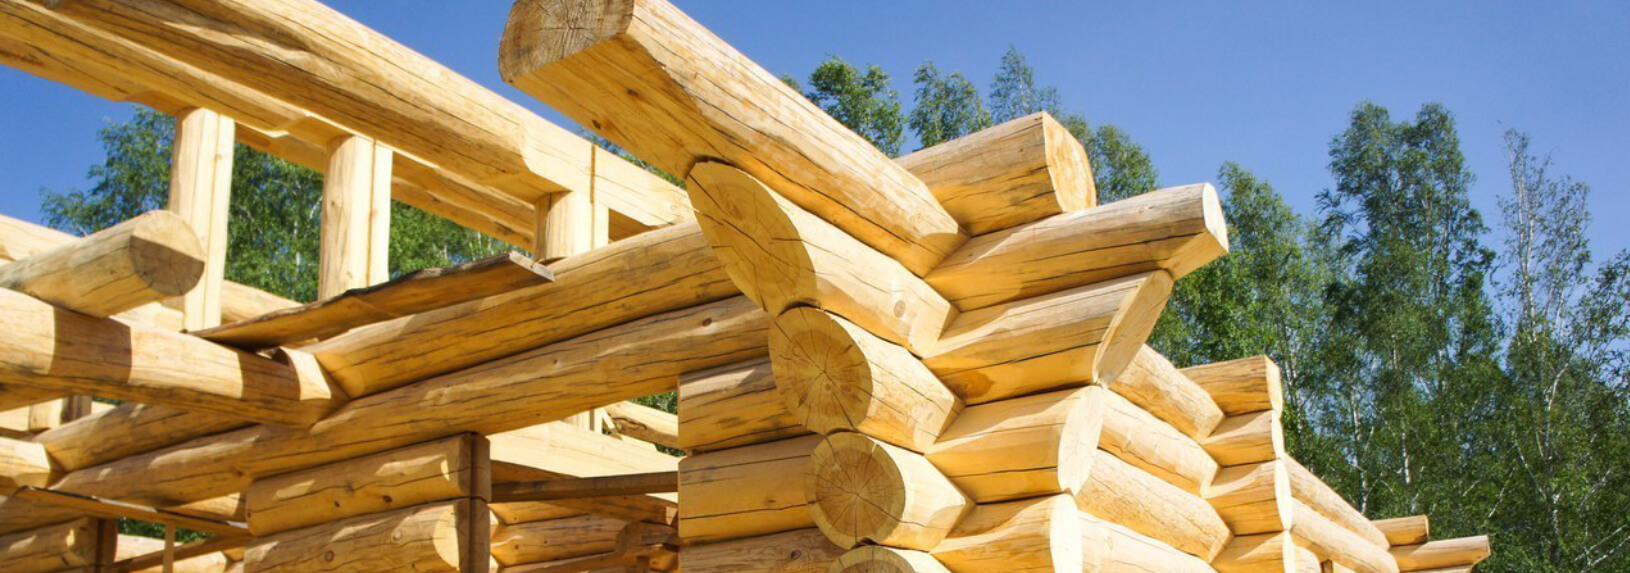 Цены на строительство деревянных домов